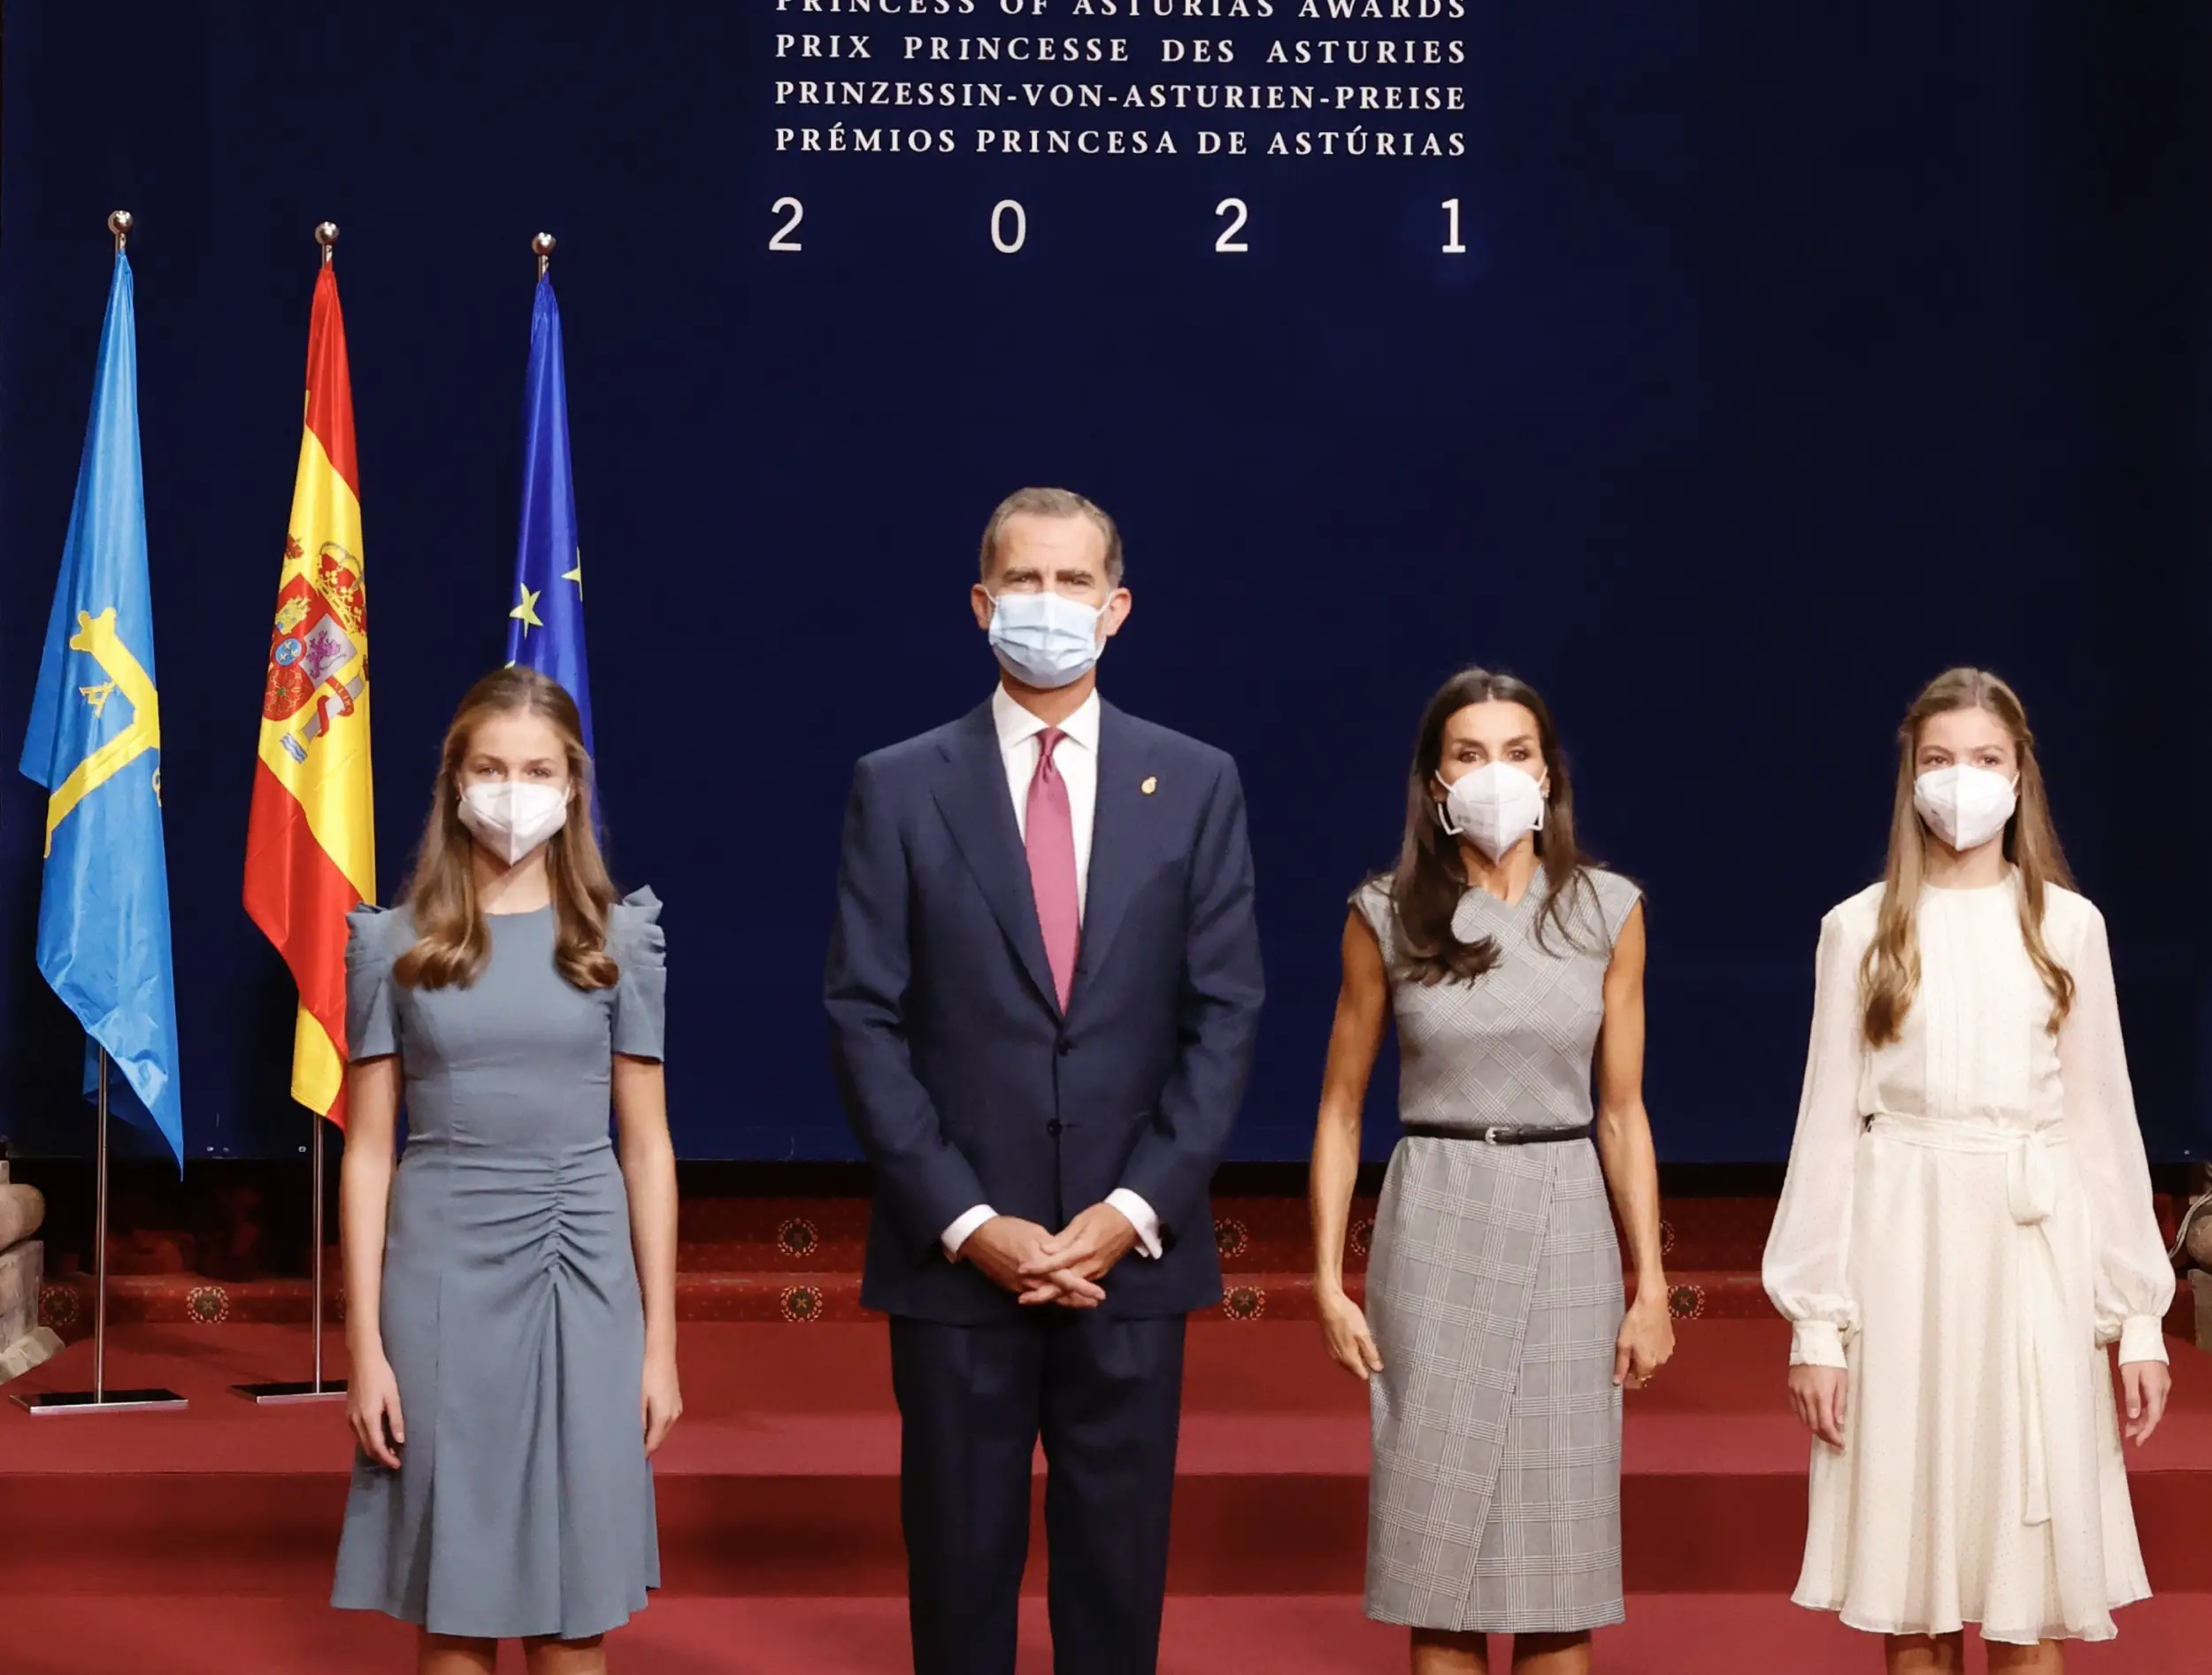 Spain Royal Family received Princess of Asturias Awards Winners